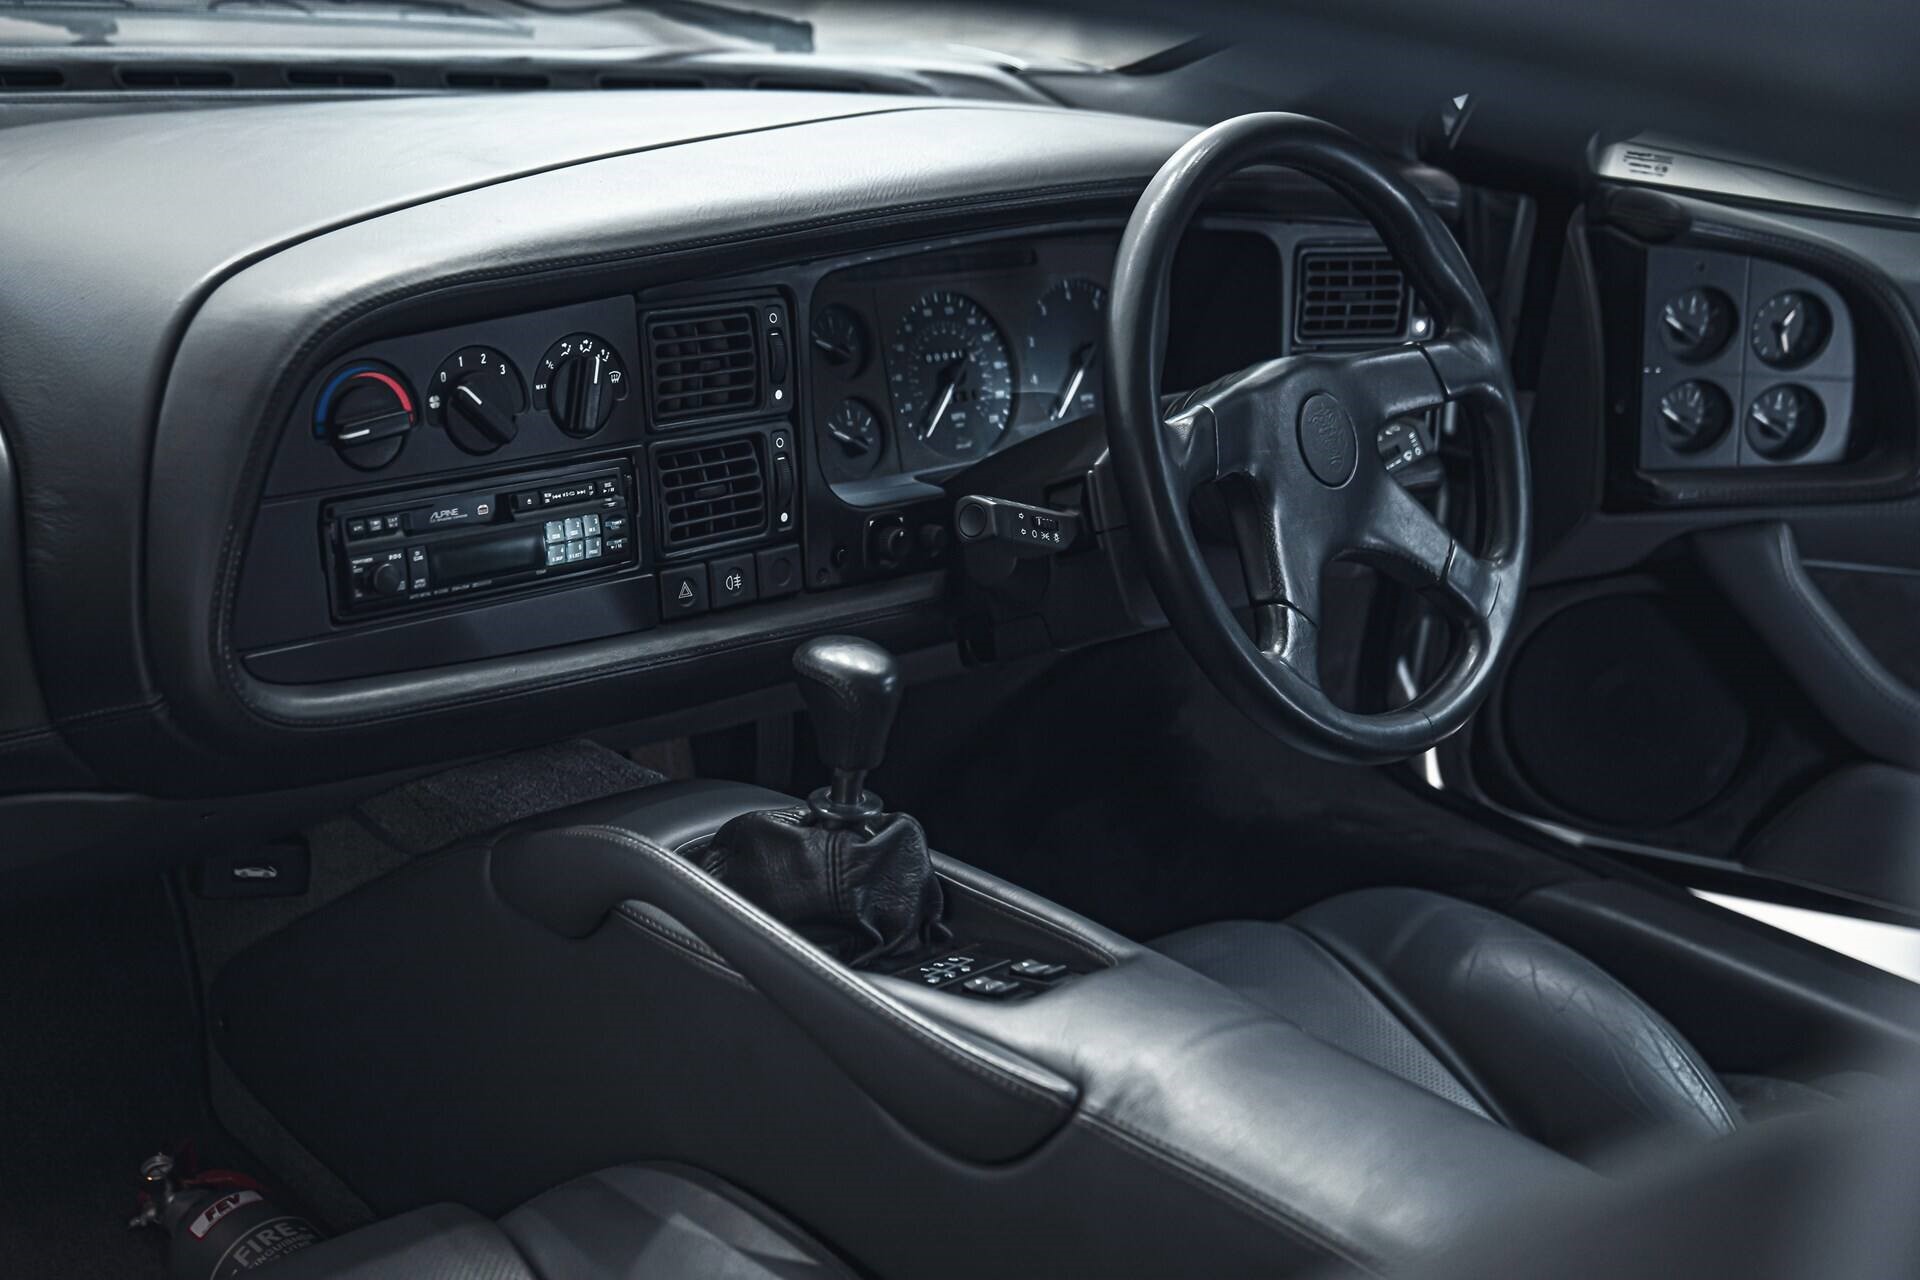 Interior of a silver 1993 Jaguar XJ220